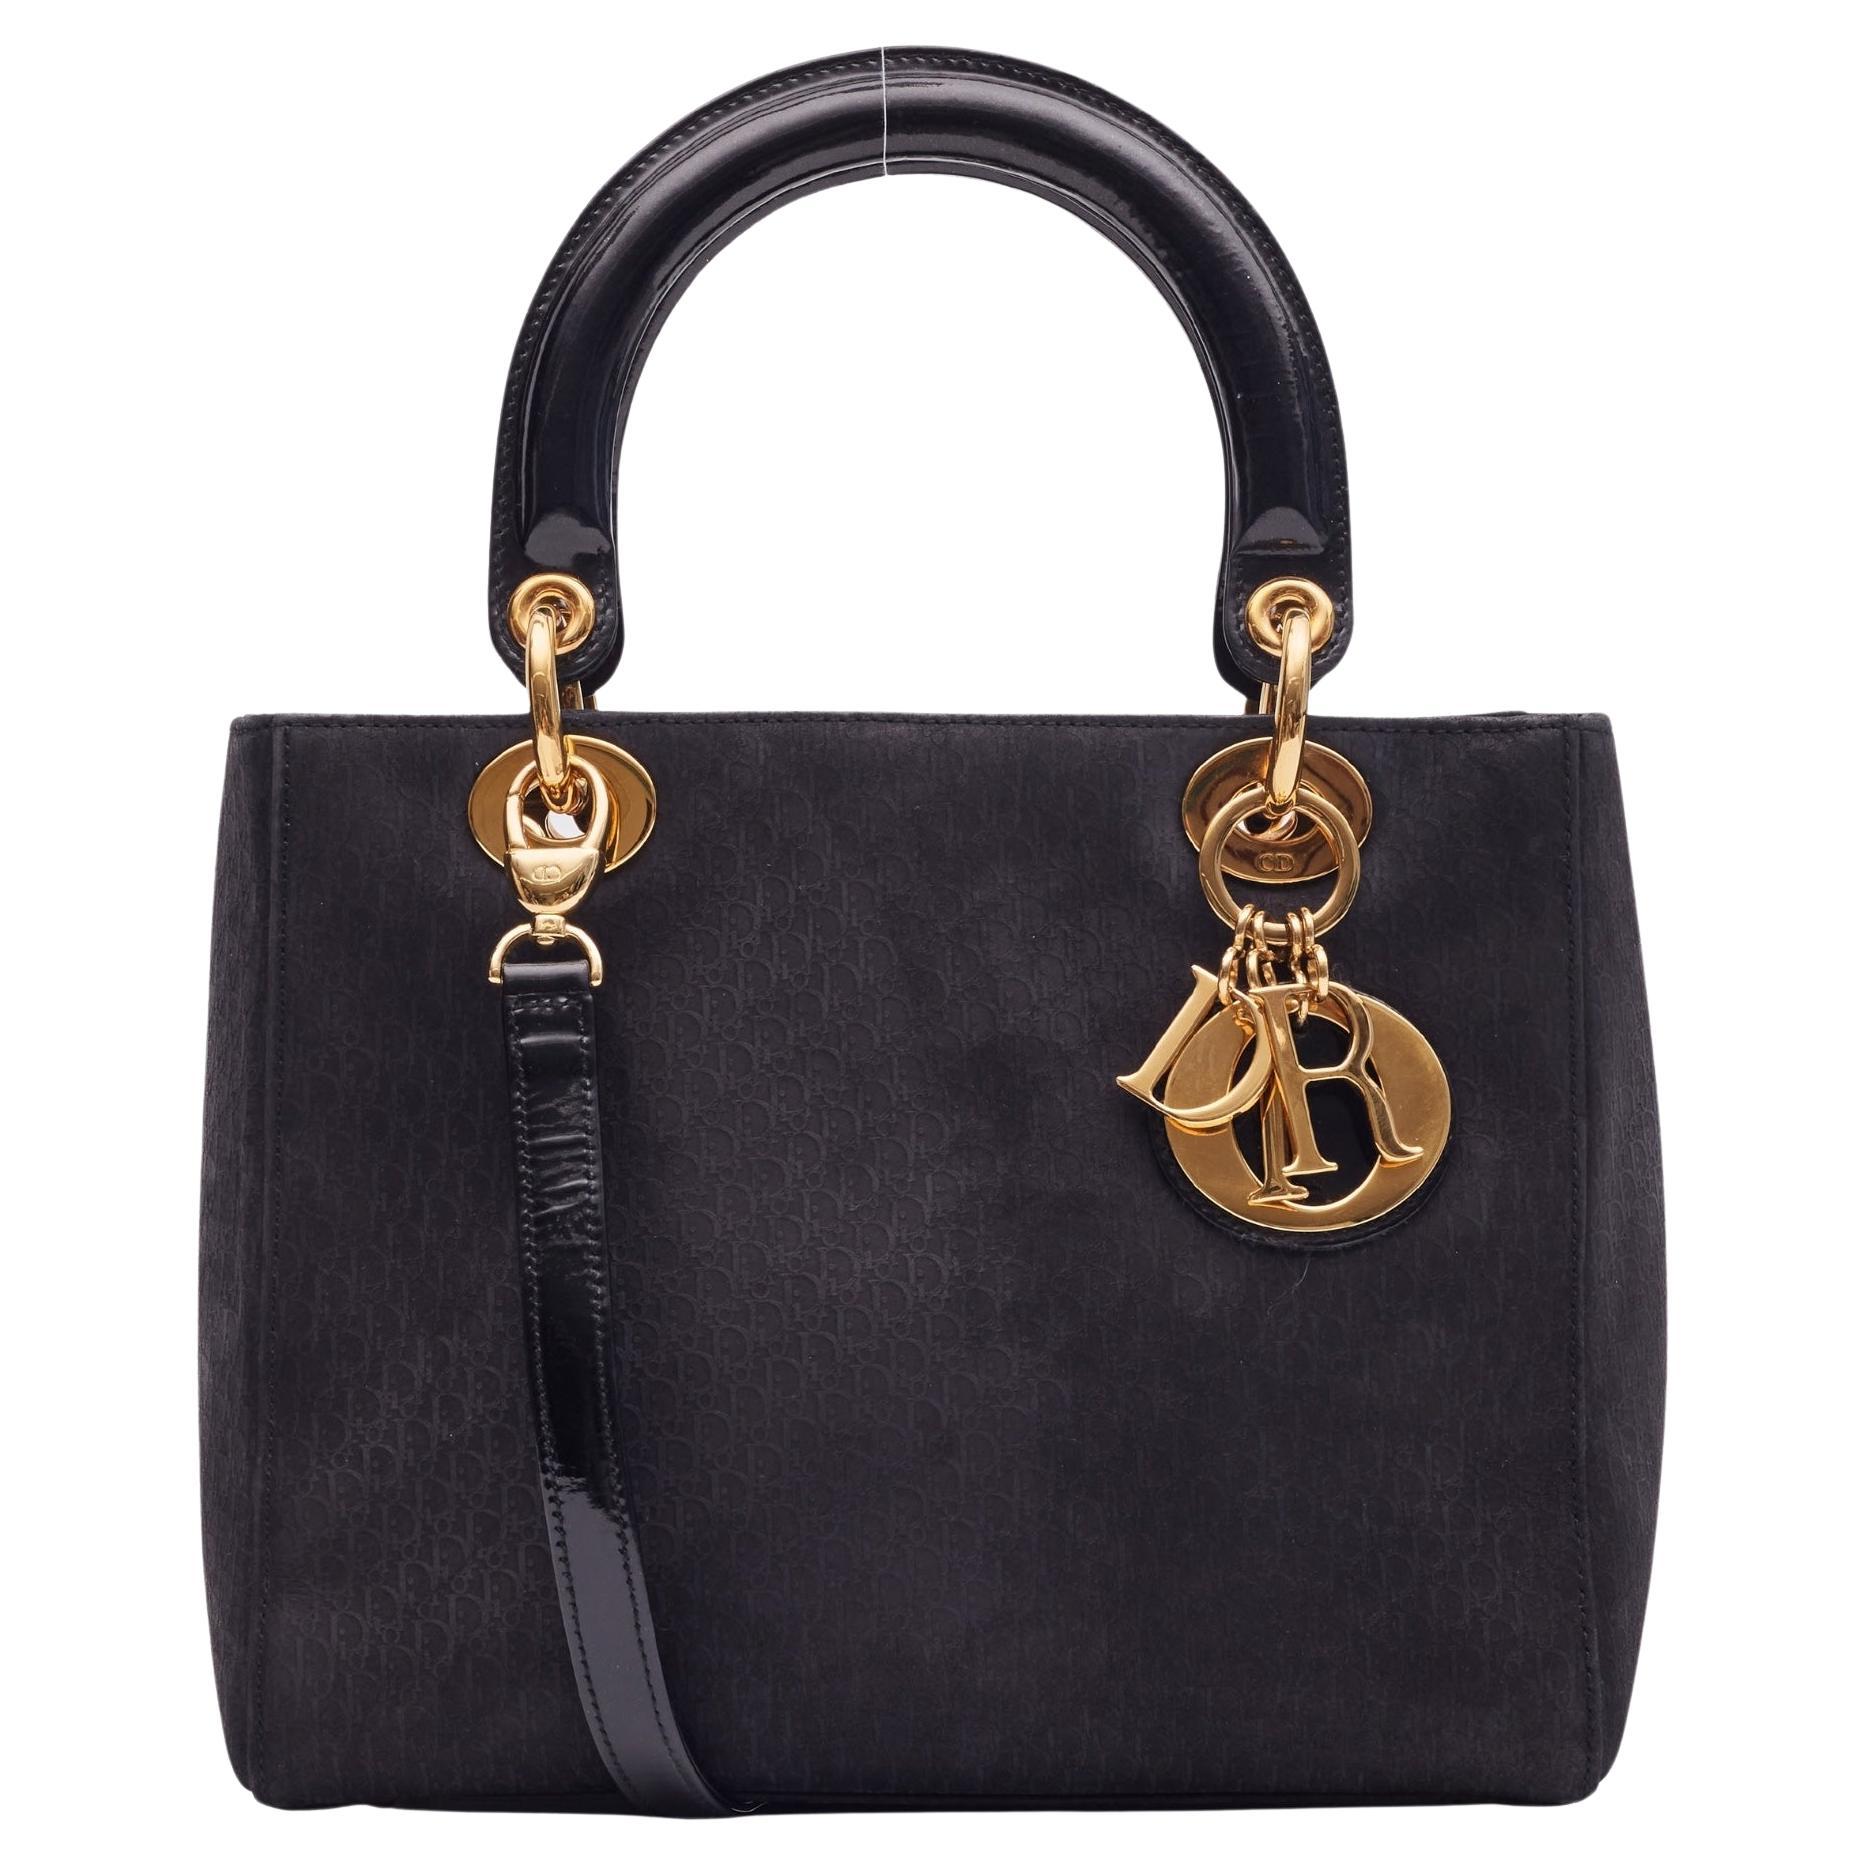 How do you attach a Lady Dior bag strap?